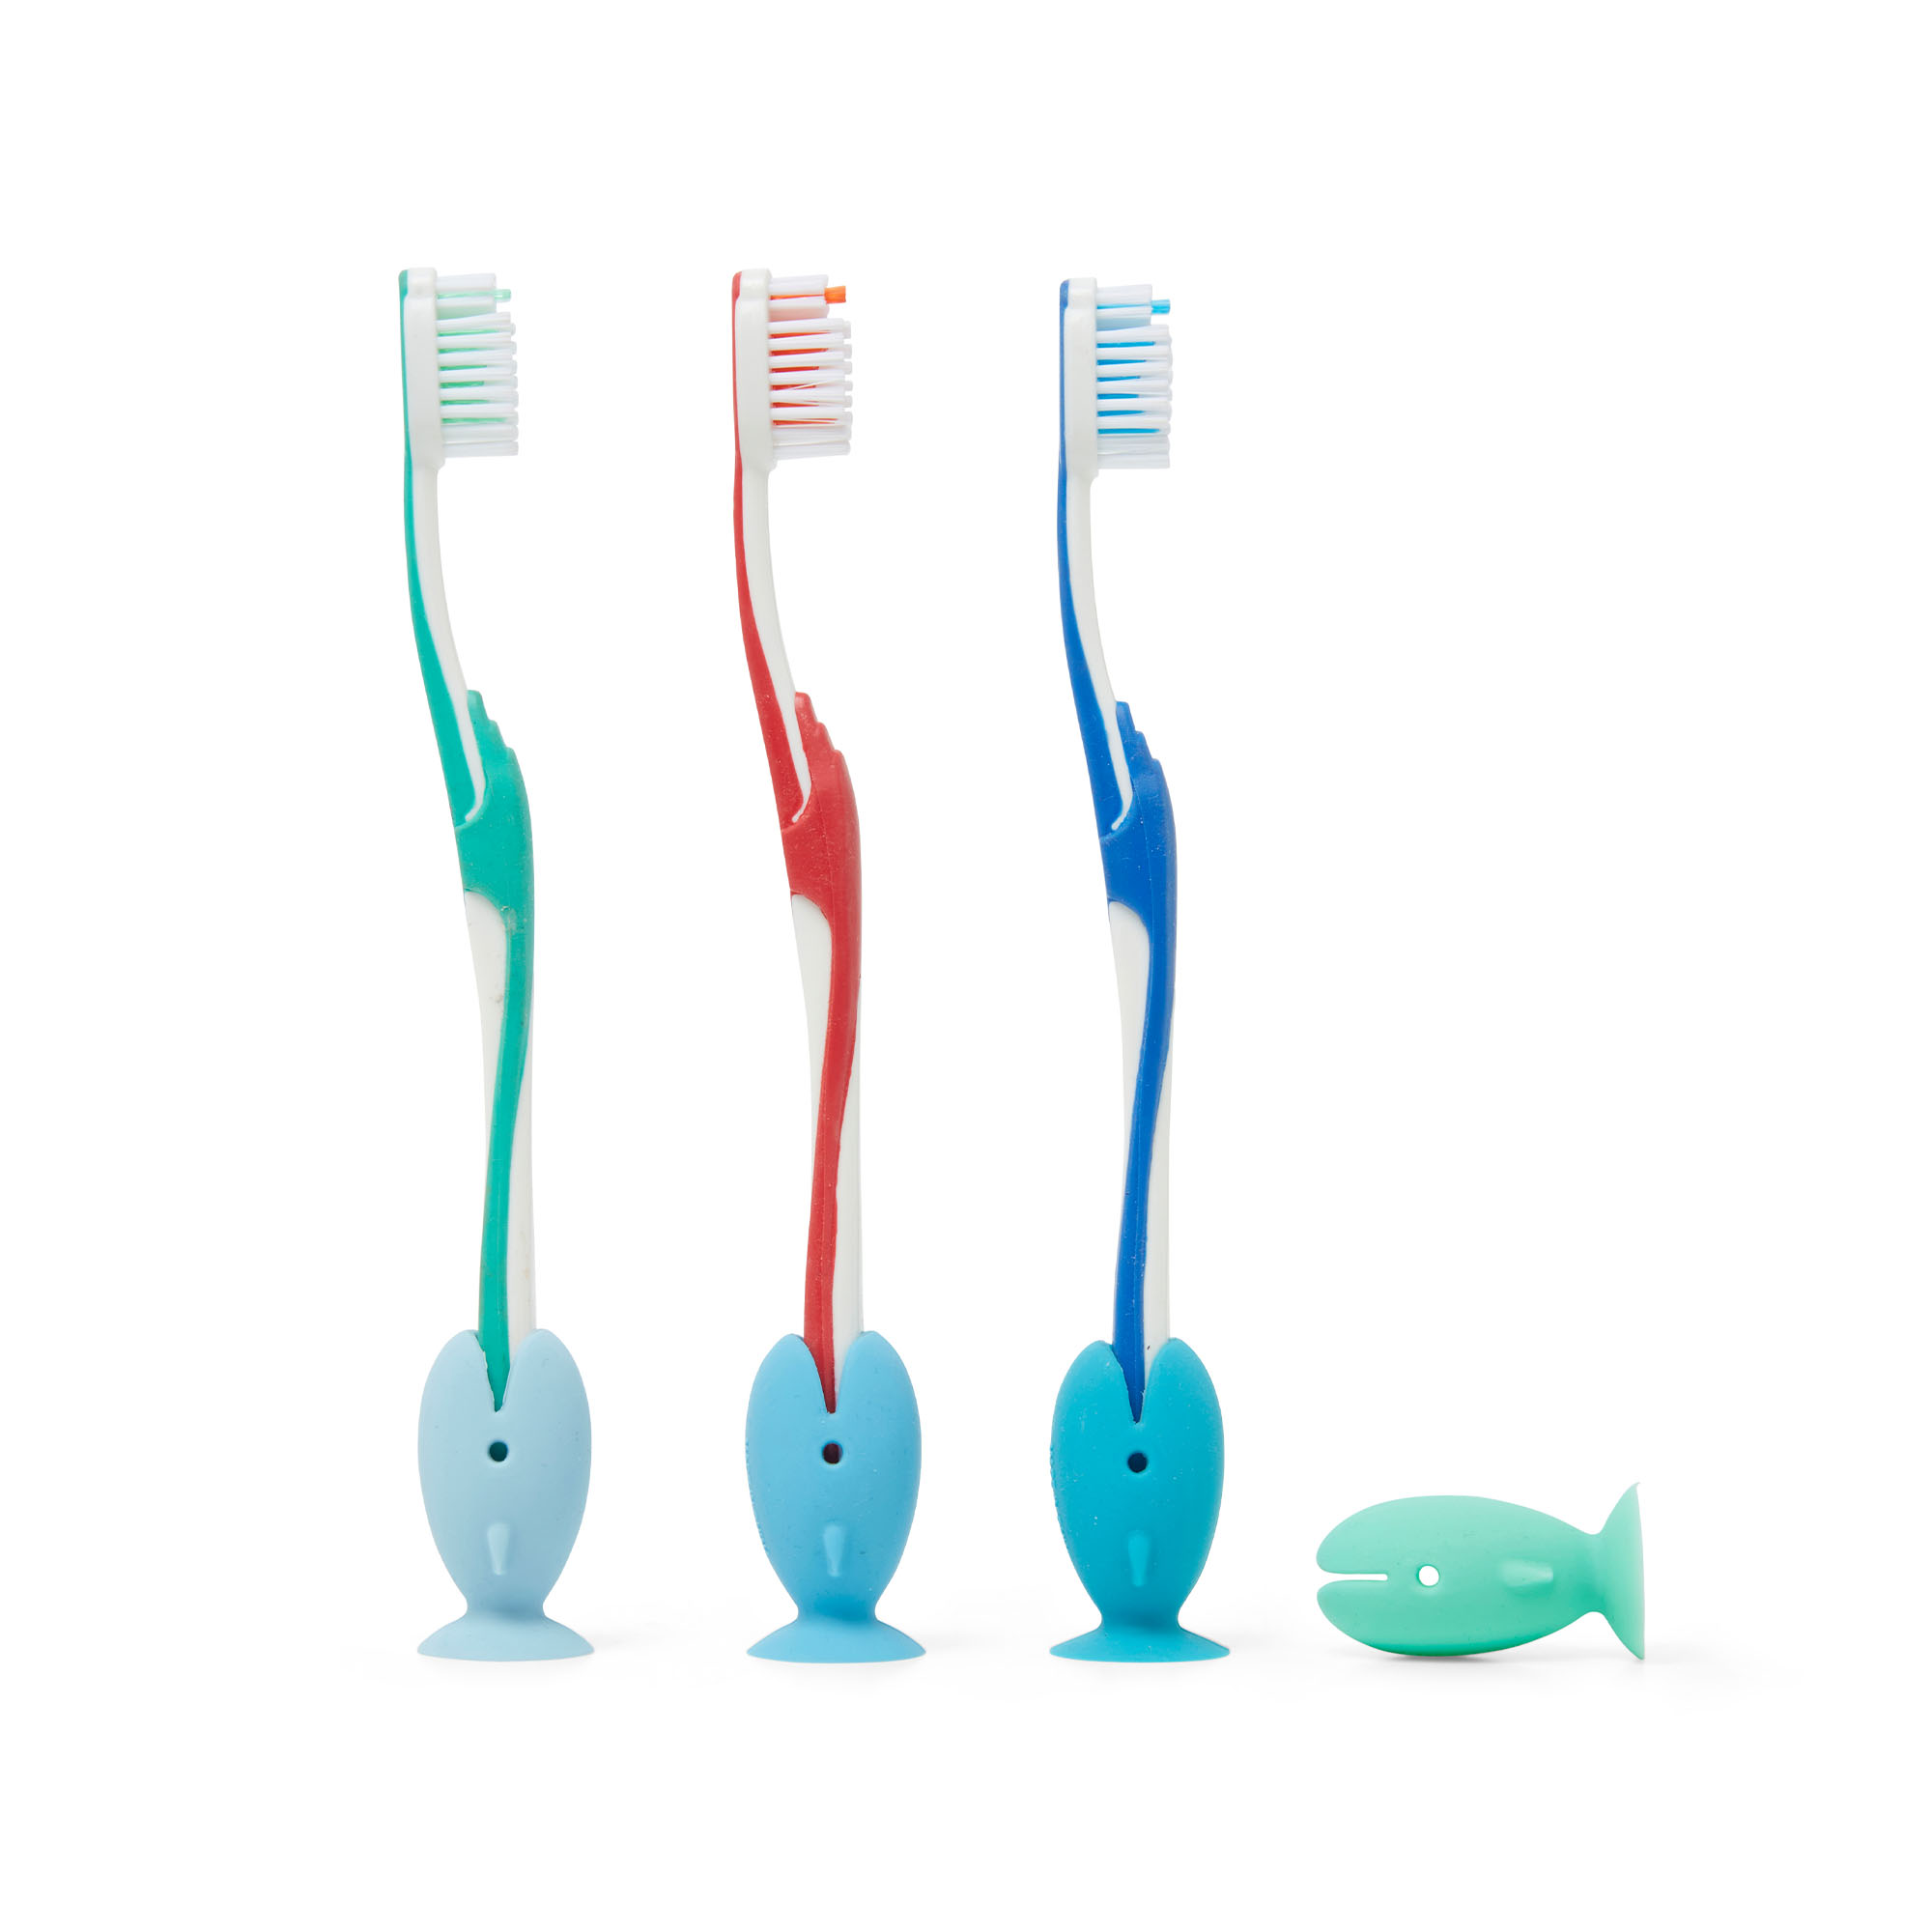 Protezione in silicone per spazzolino da denti - Set da 4 pz, , large